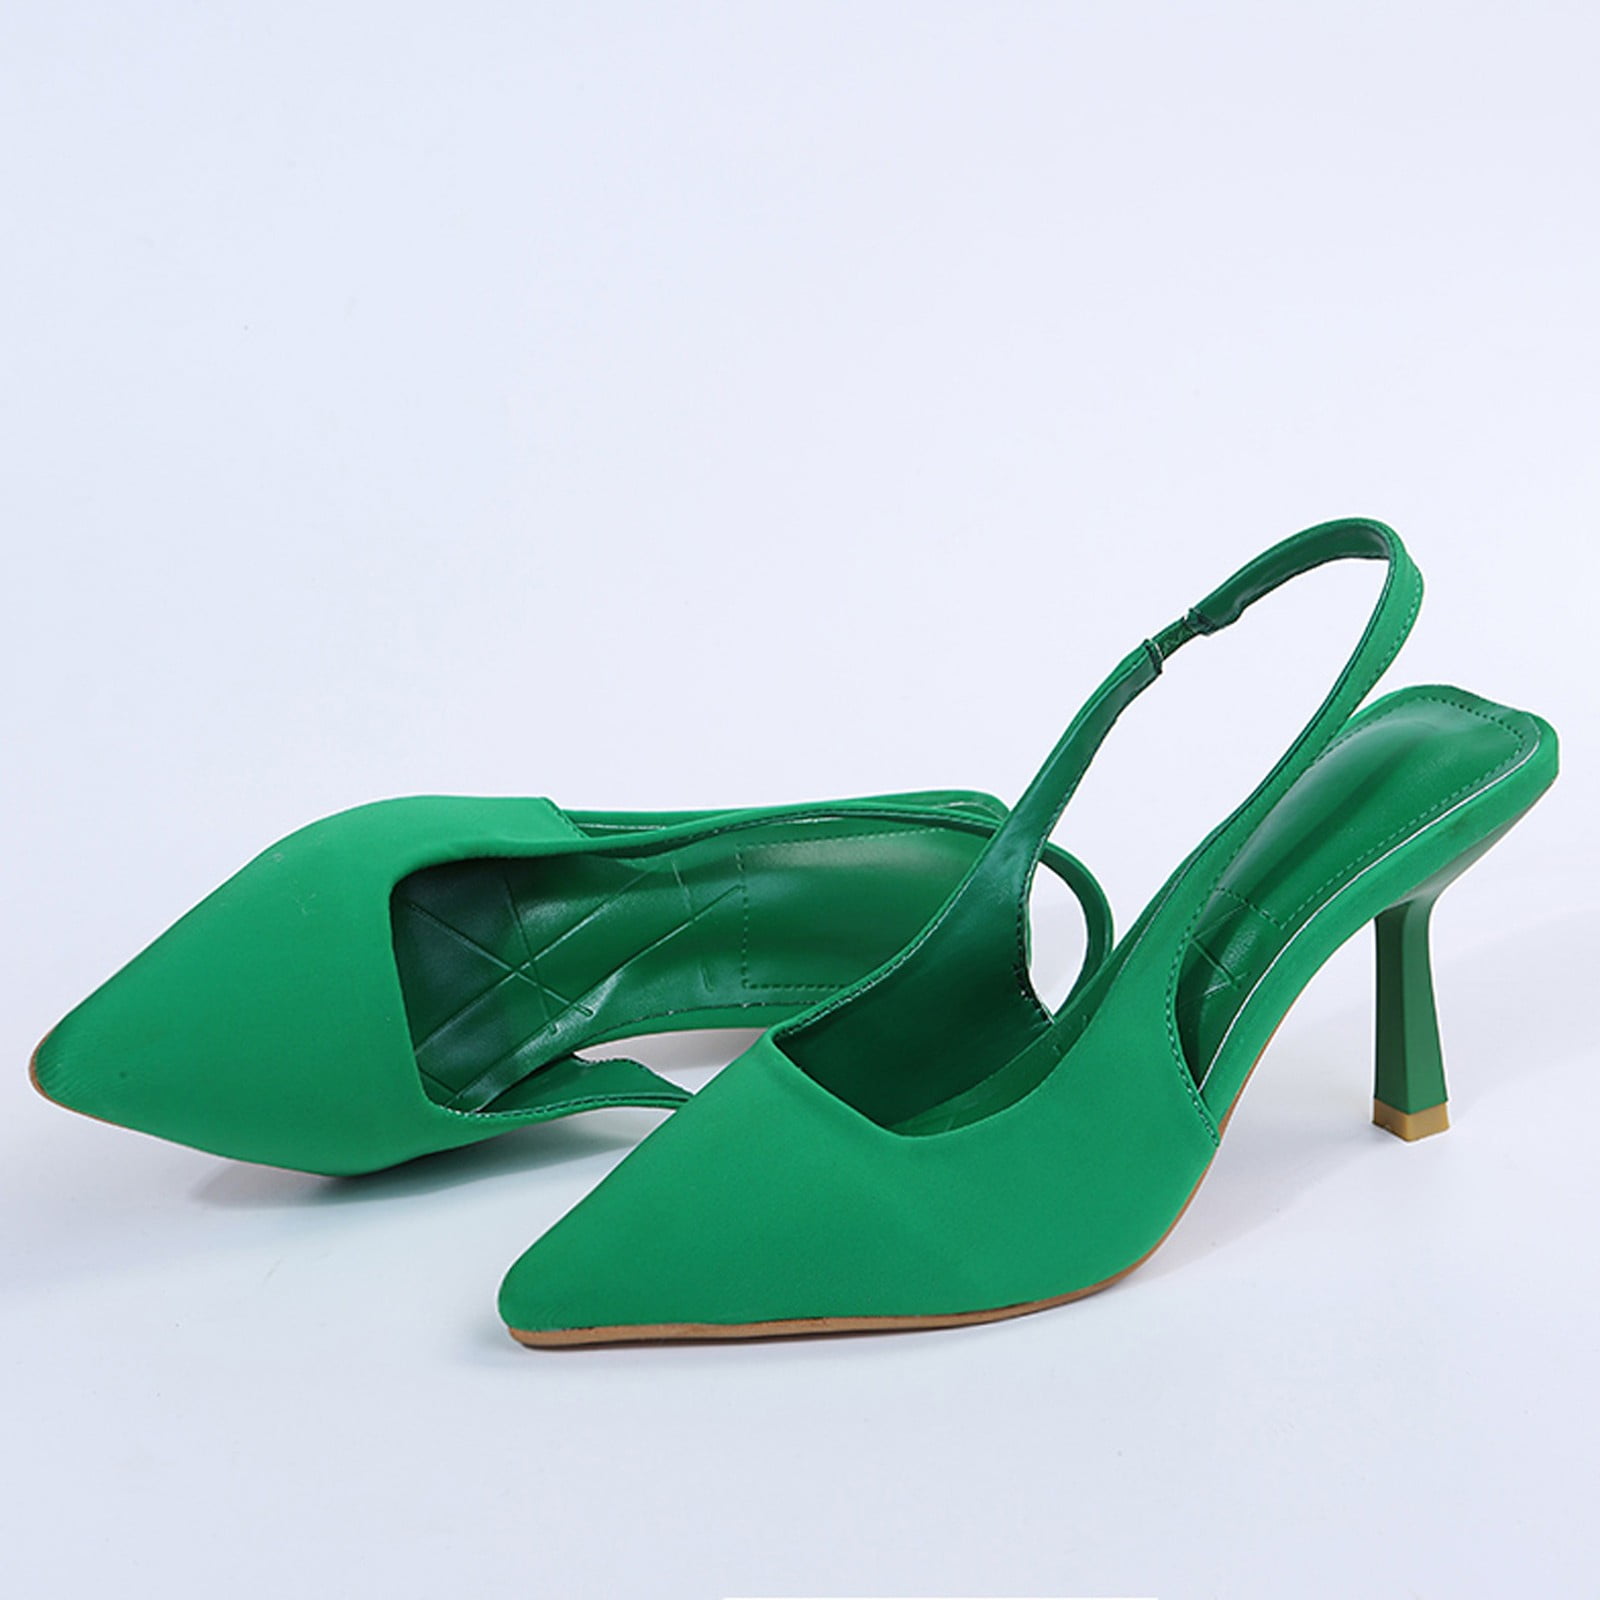 Buy Emerald Green Shoes Low Heel 1 3/4 Inch Gold Metal and Crystals, Gatsby  Low Heels Green,green Short Heel Satin Shoe,open Toes Low Heel, Online in  India - Etsy